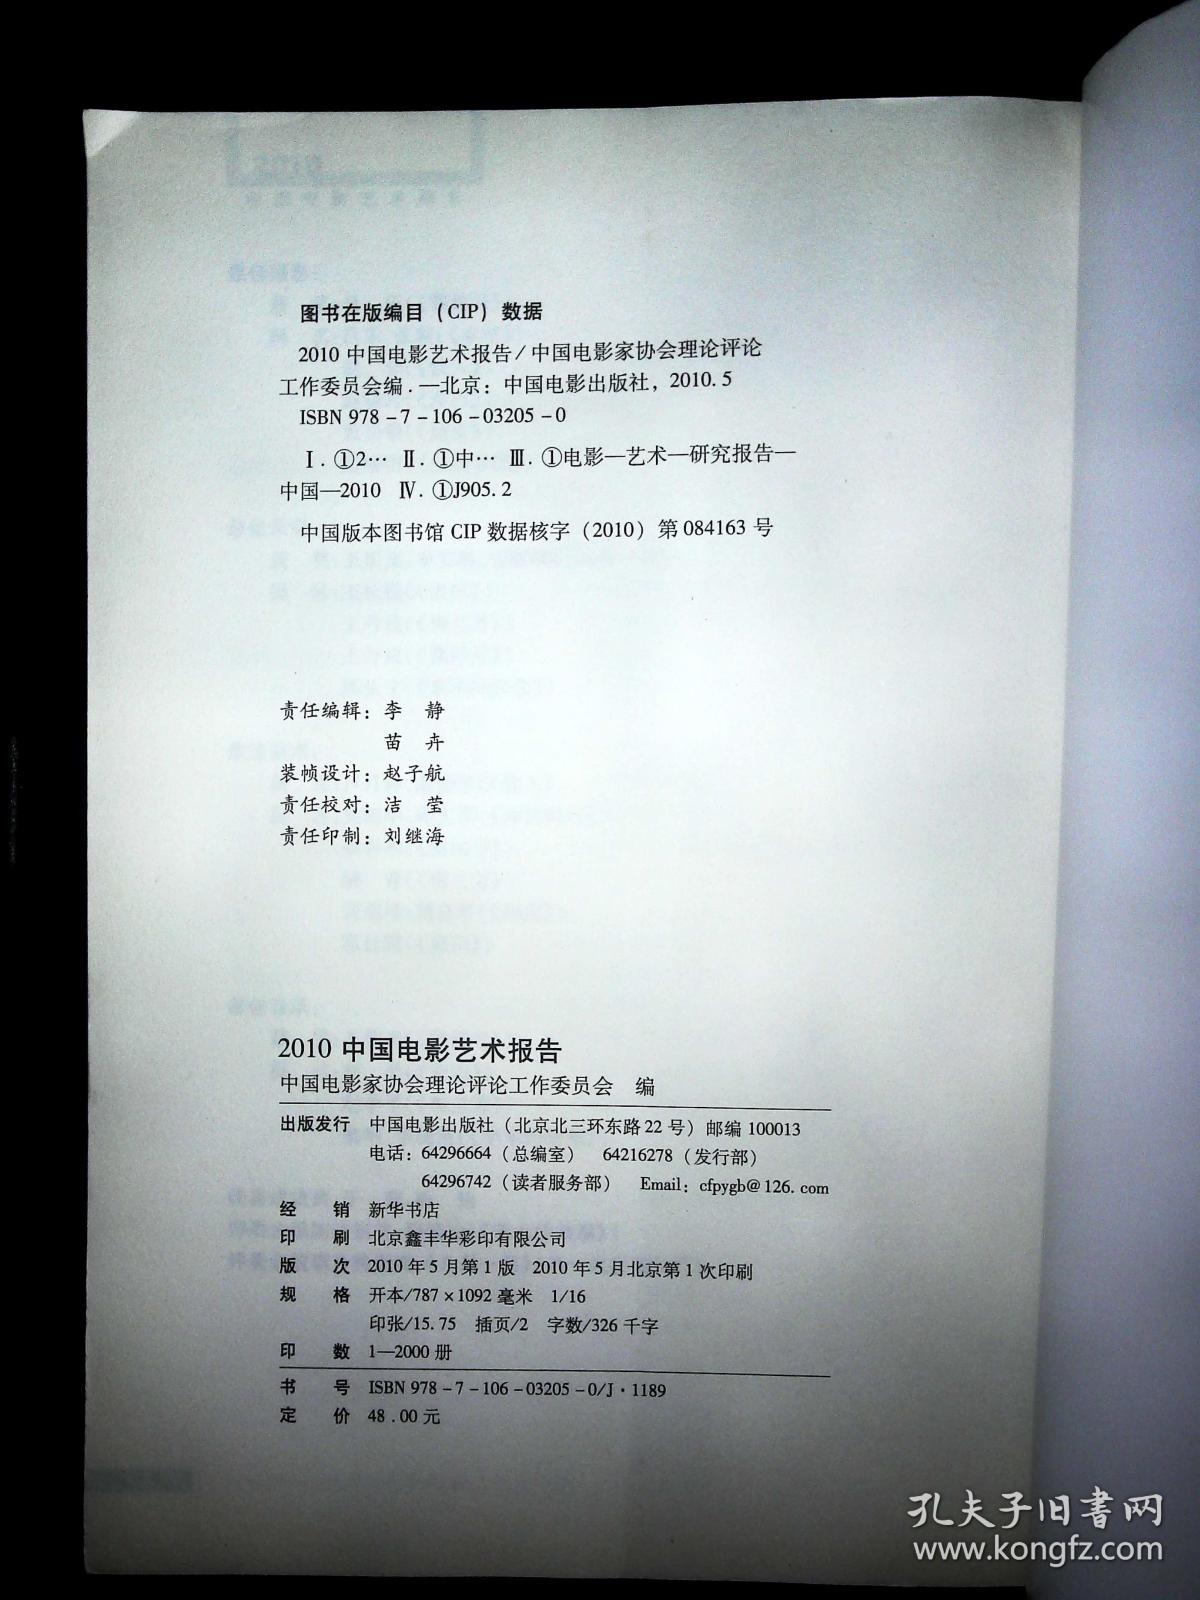 2010中国电影艺术报告